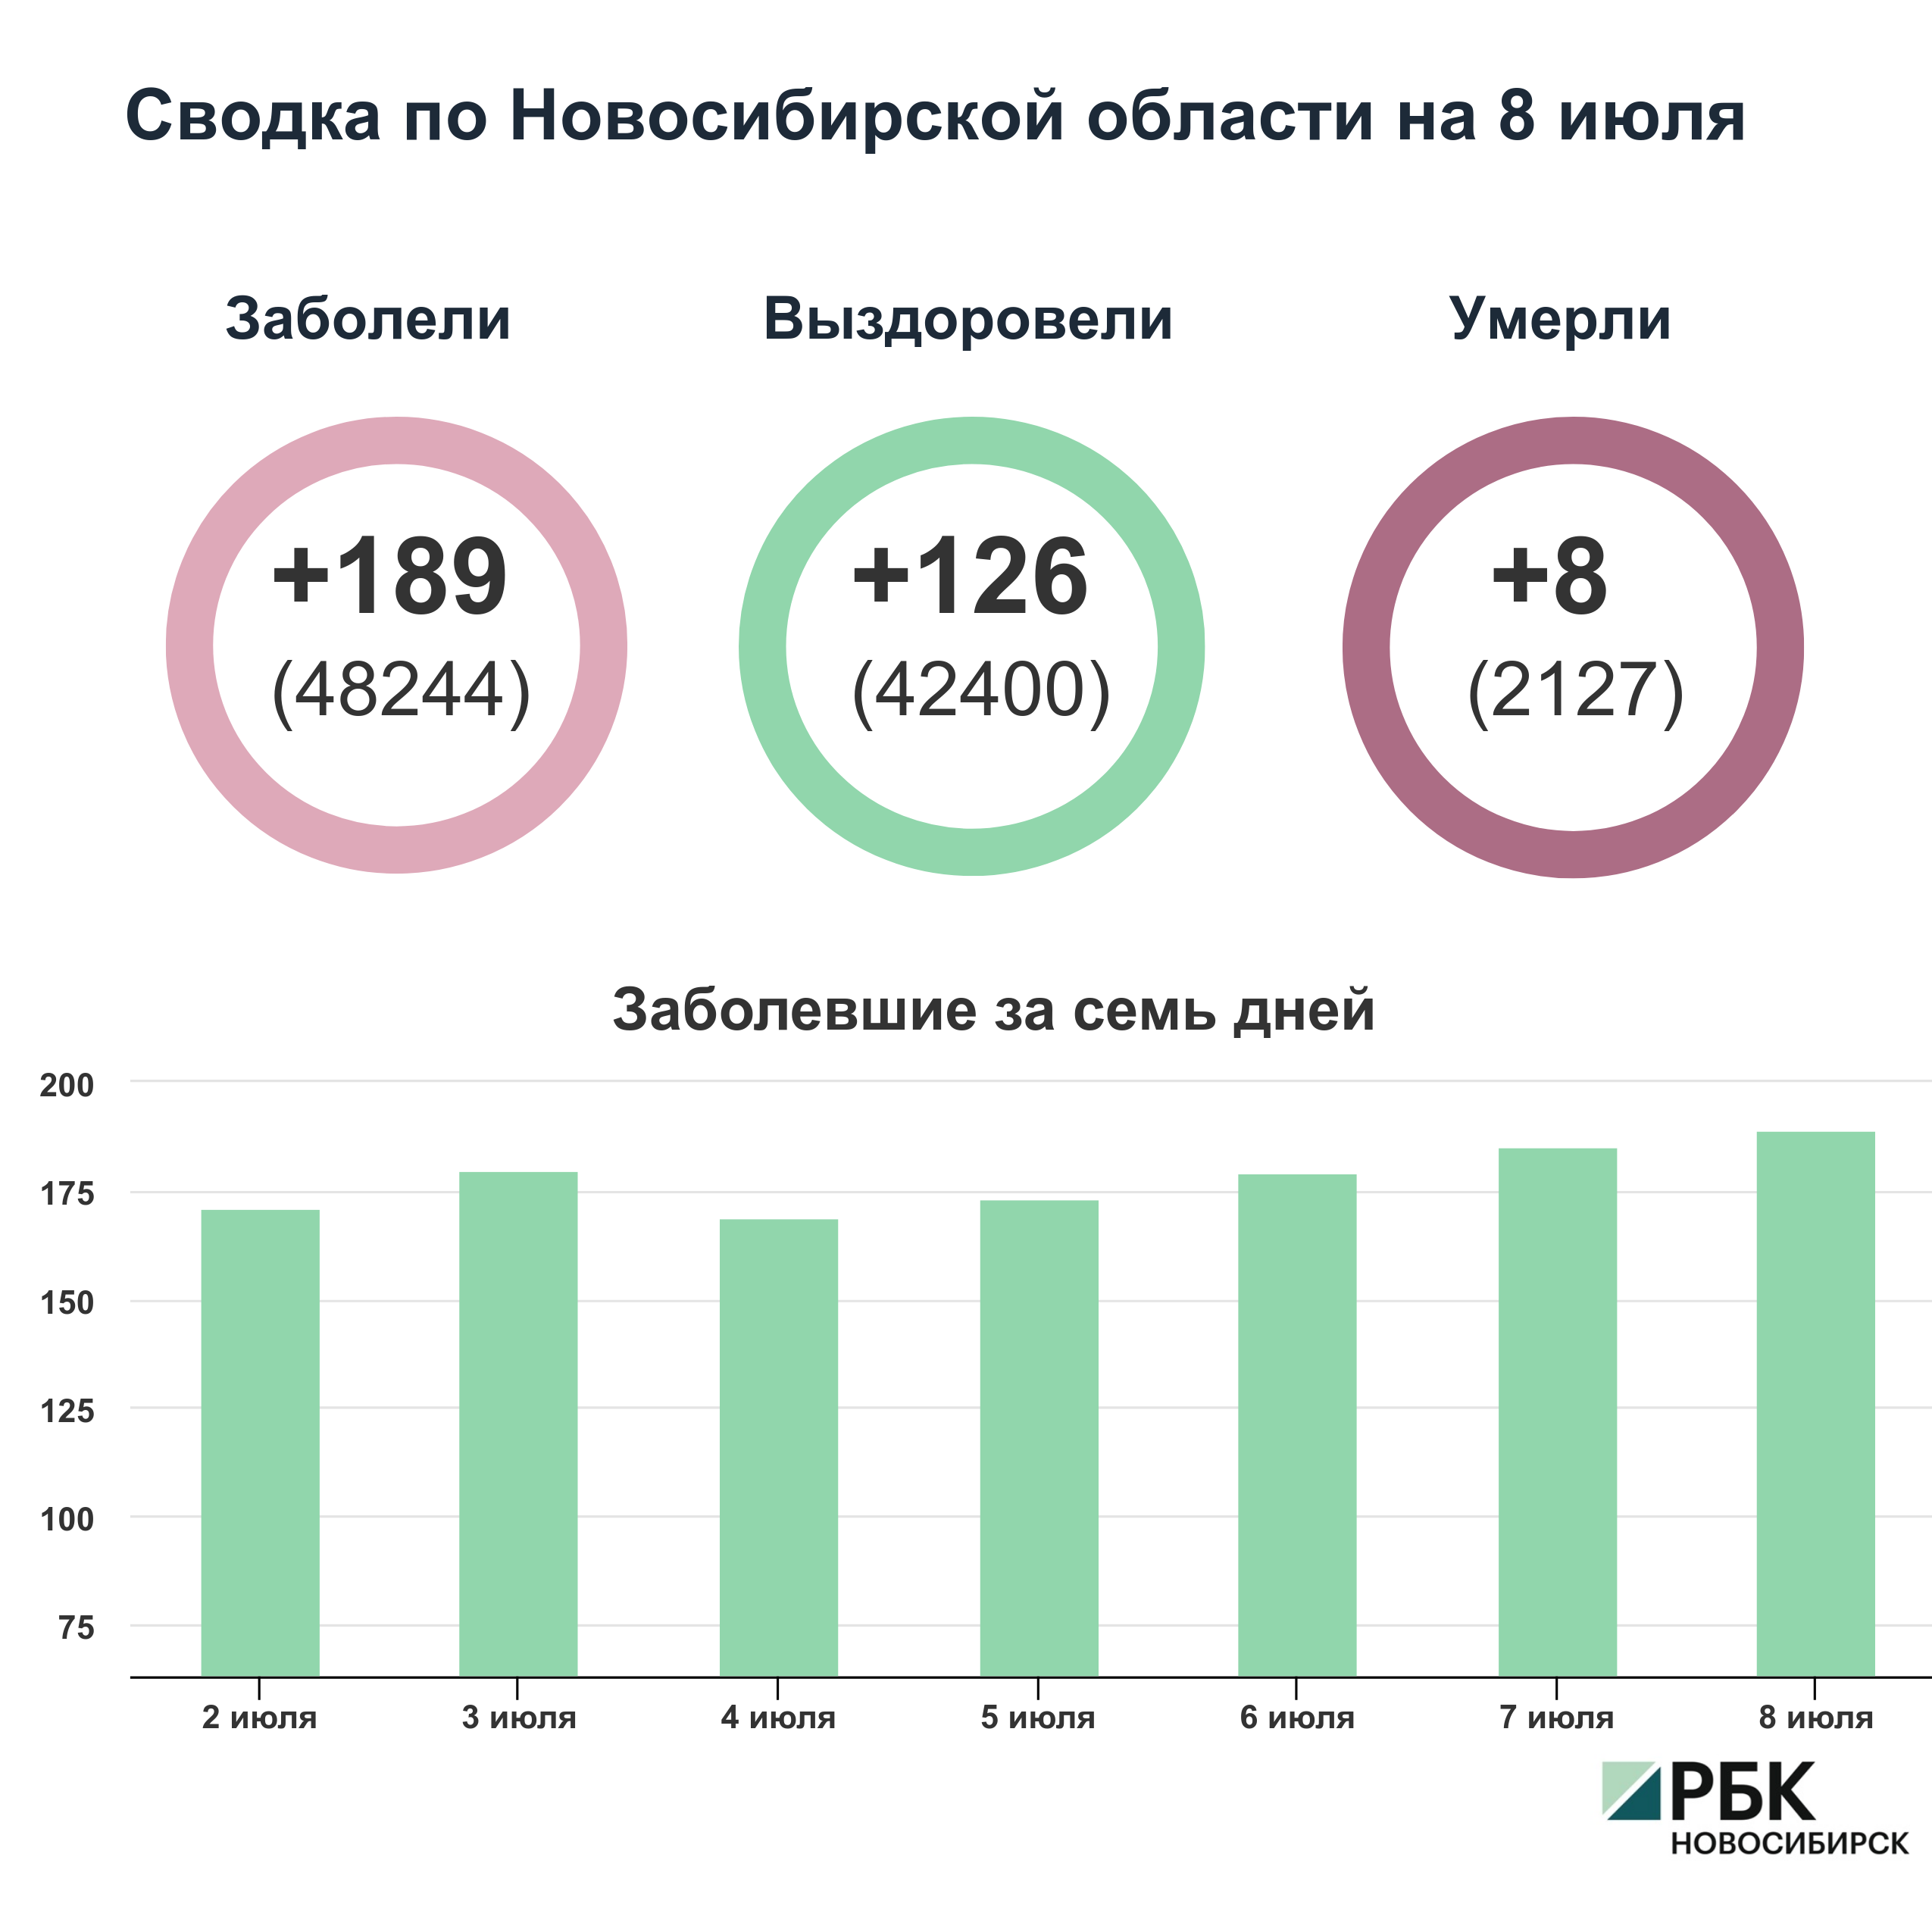 Коронавирус в Новосибирске: сводка на 8 июля